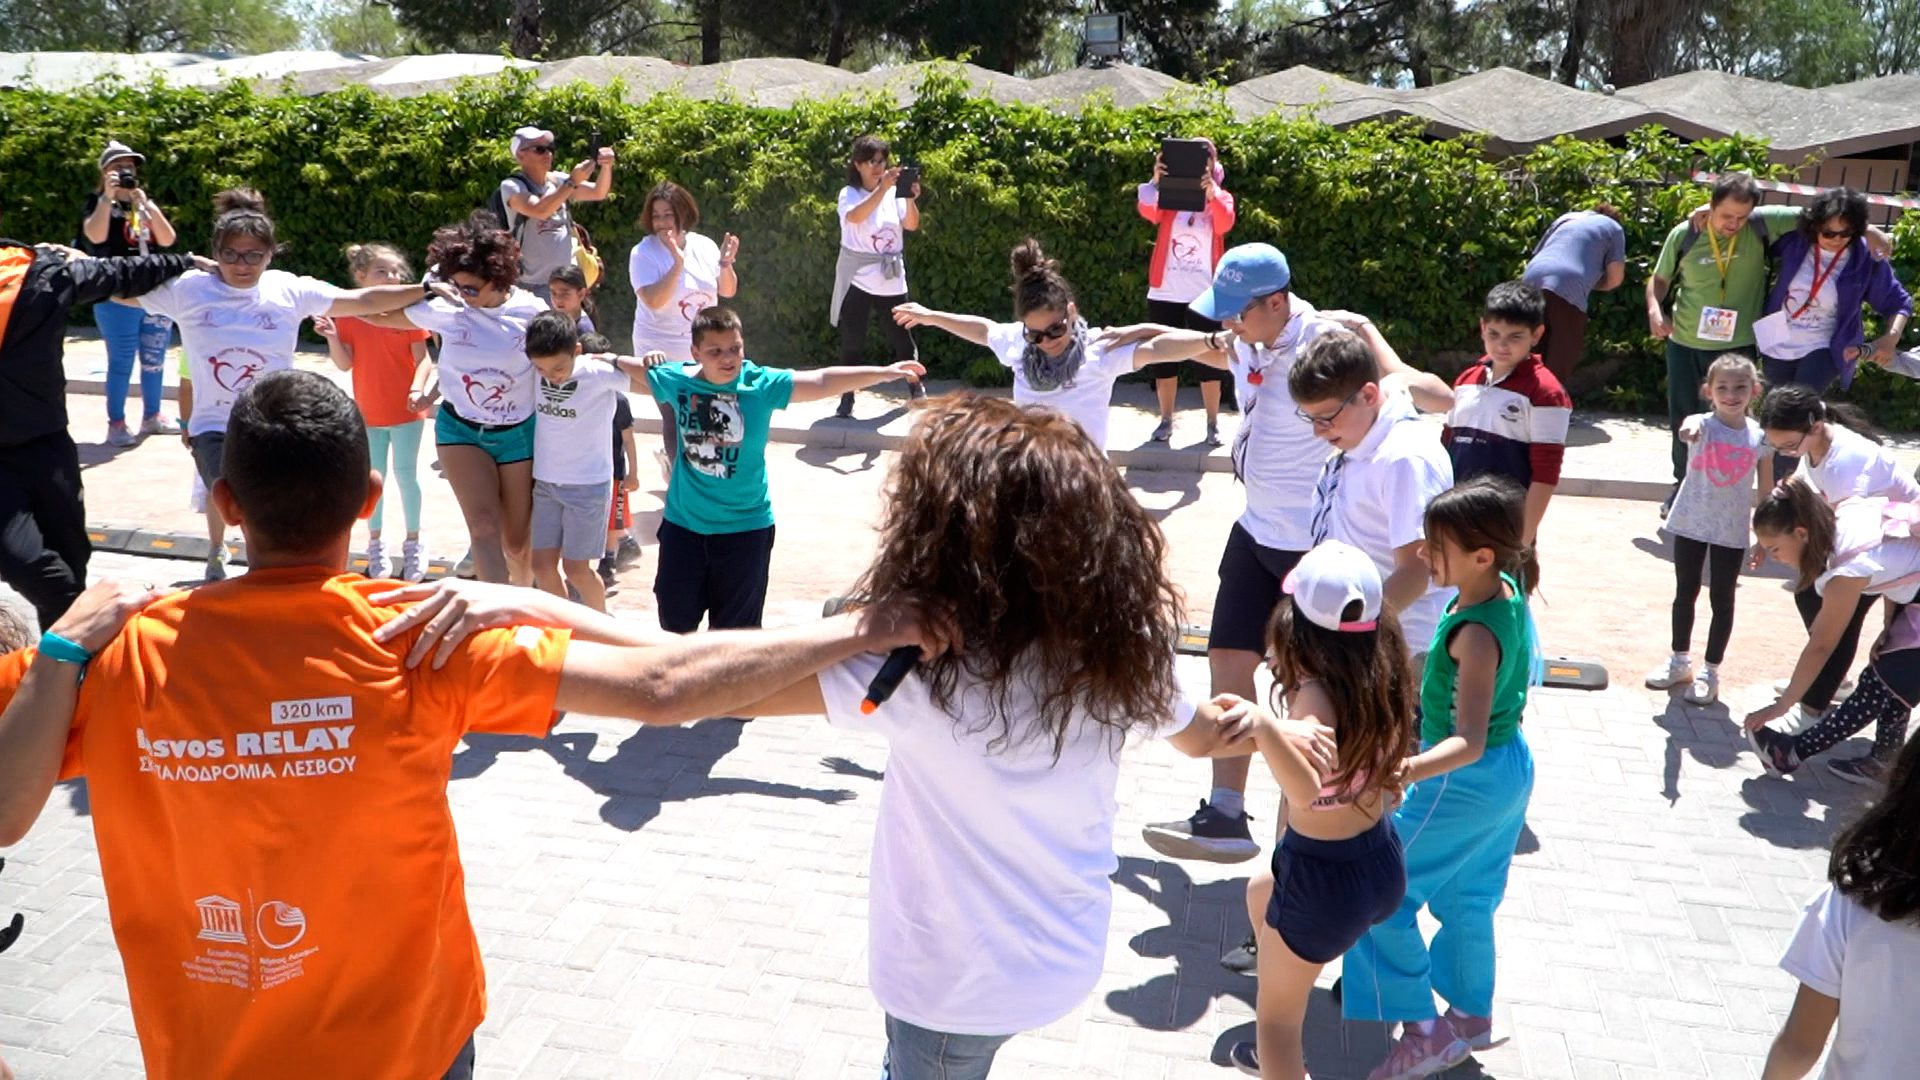 “Έτρεξαν για τη ζωή” μαμάδες με τα παιδάκια τους σε μια ξεχωριστή εκδήλωση των Lesvos Runners